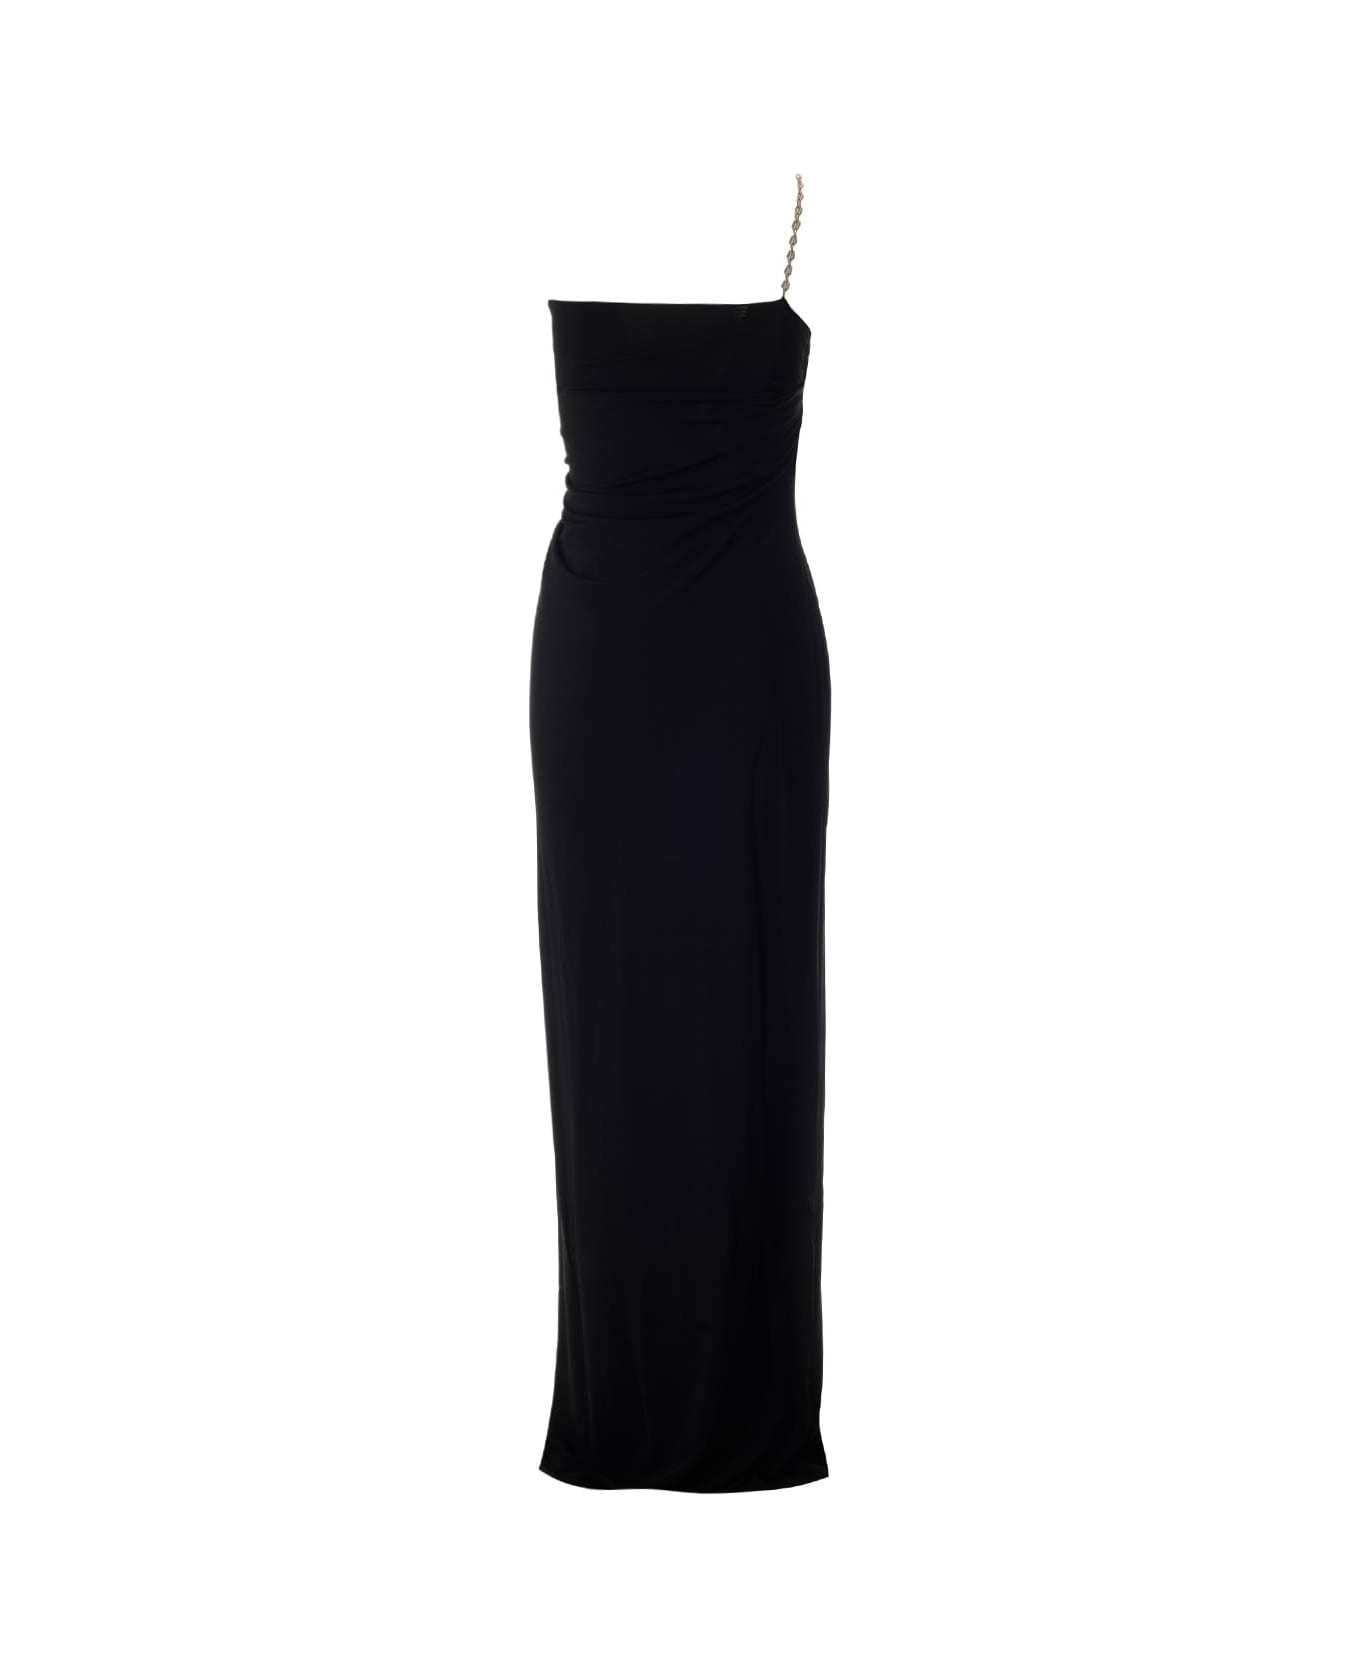 Givenchy Long Asymmetrical Draped Dress - black